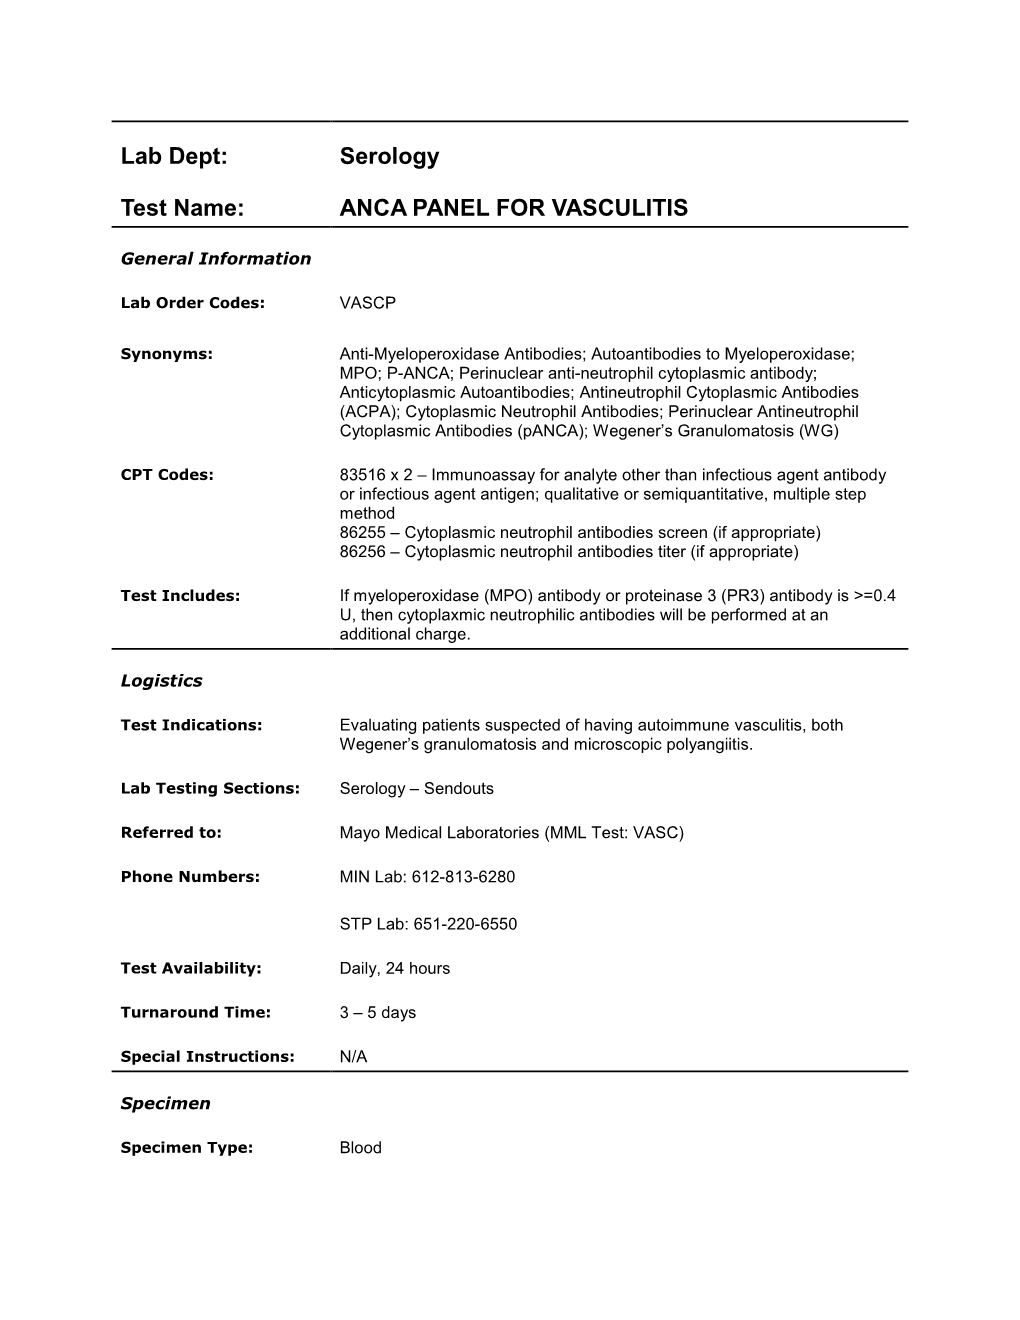 Anca Panel for Vasculitis